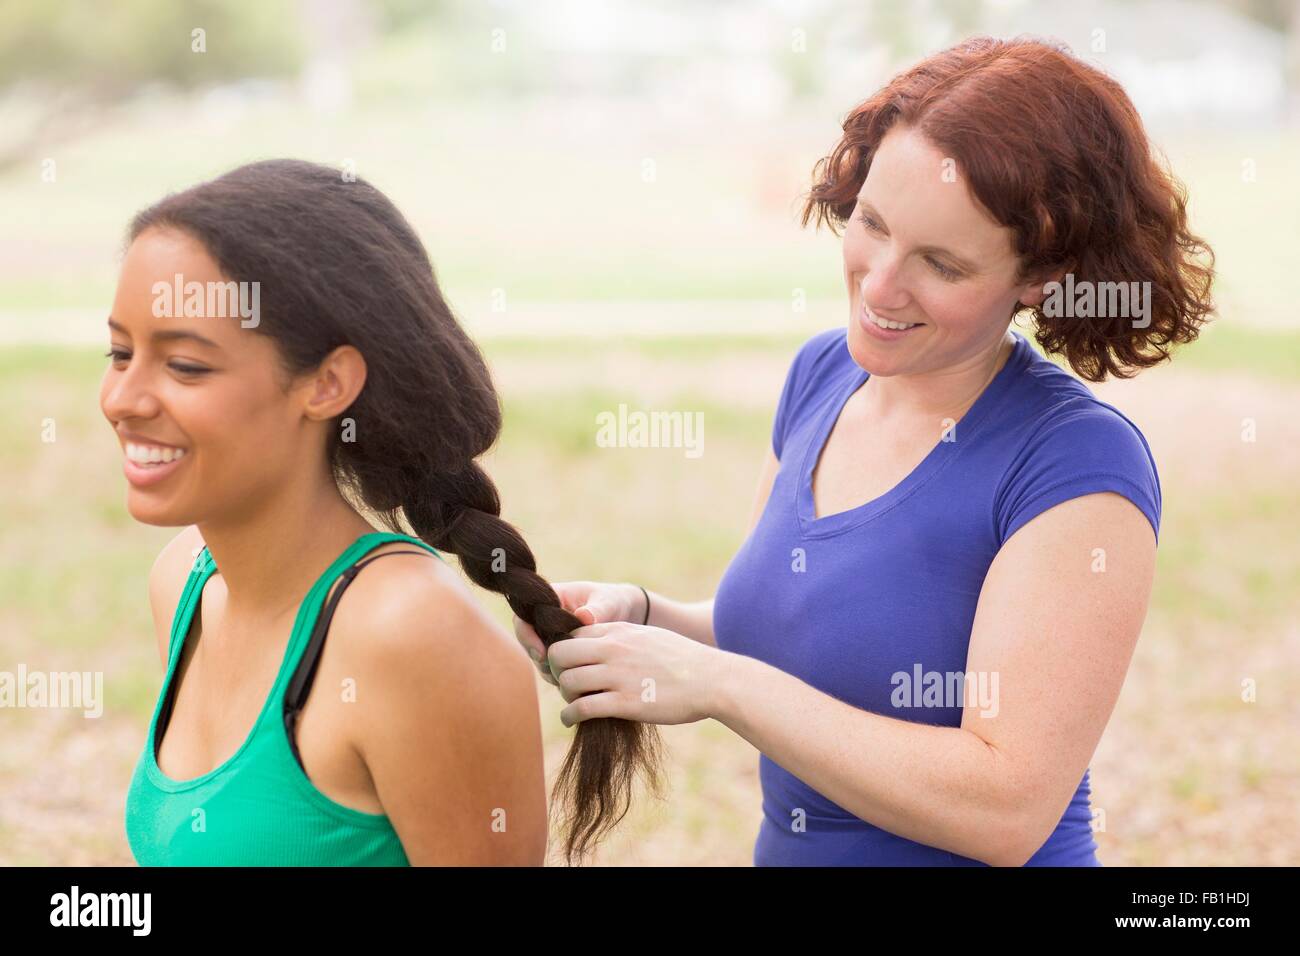 Jeune femme derrière ami tresser les cheveux smiling Banque D'Images